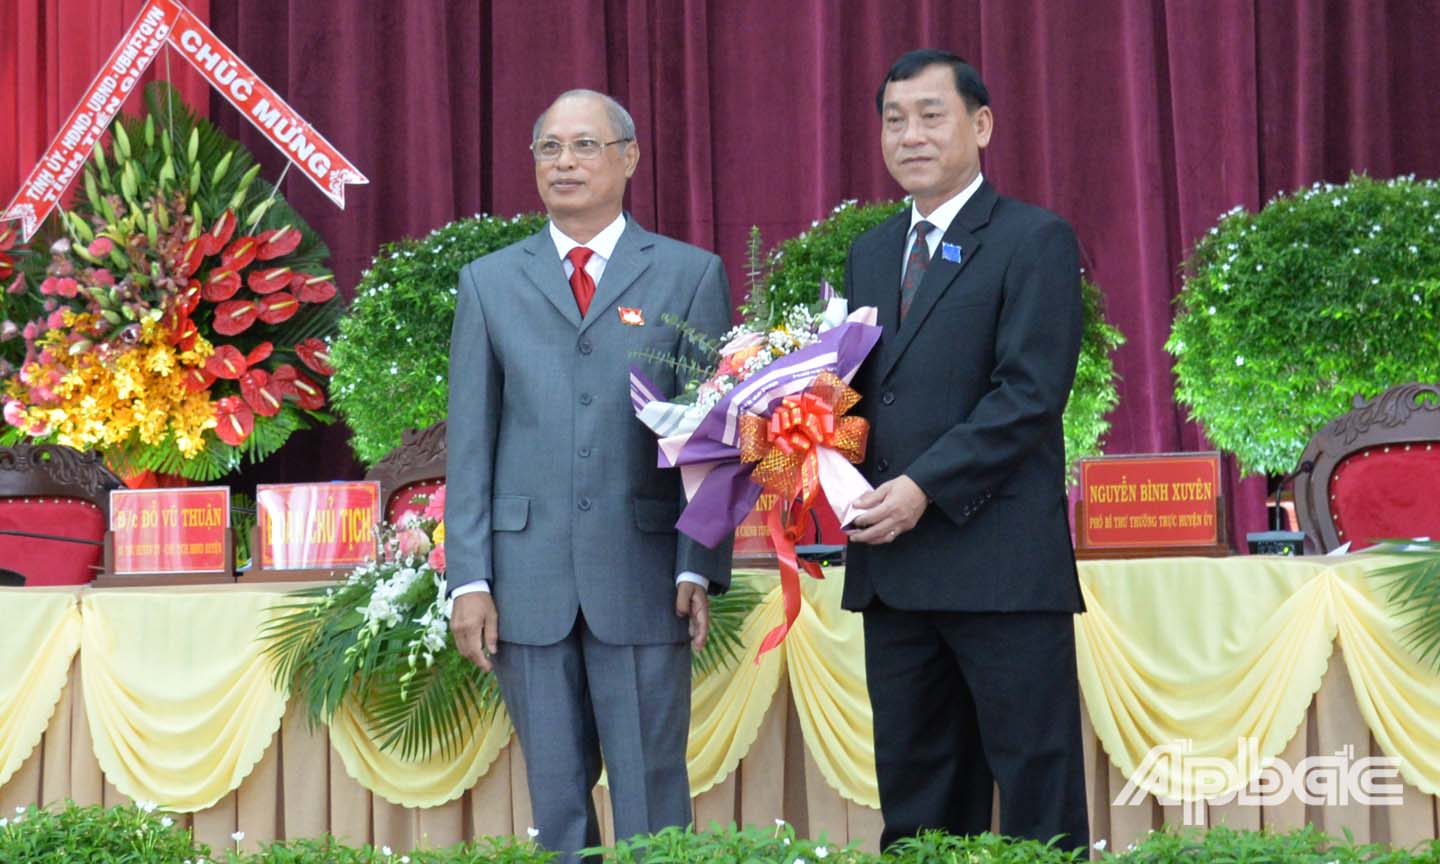 Đồng chí Đỗ Vũ Thuận (bìa trái), Bí thư Huyện ủy Tân Phước tặng hoa đồng chí Nguyễn Văn Vĩnh.